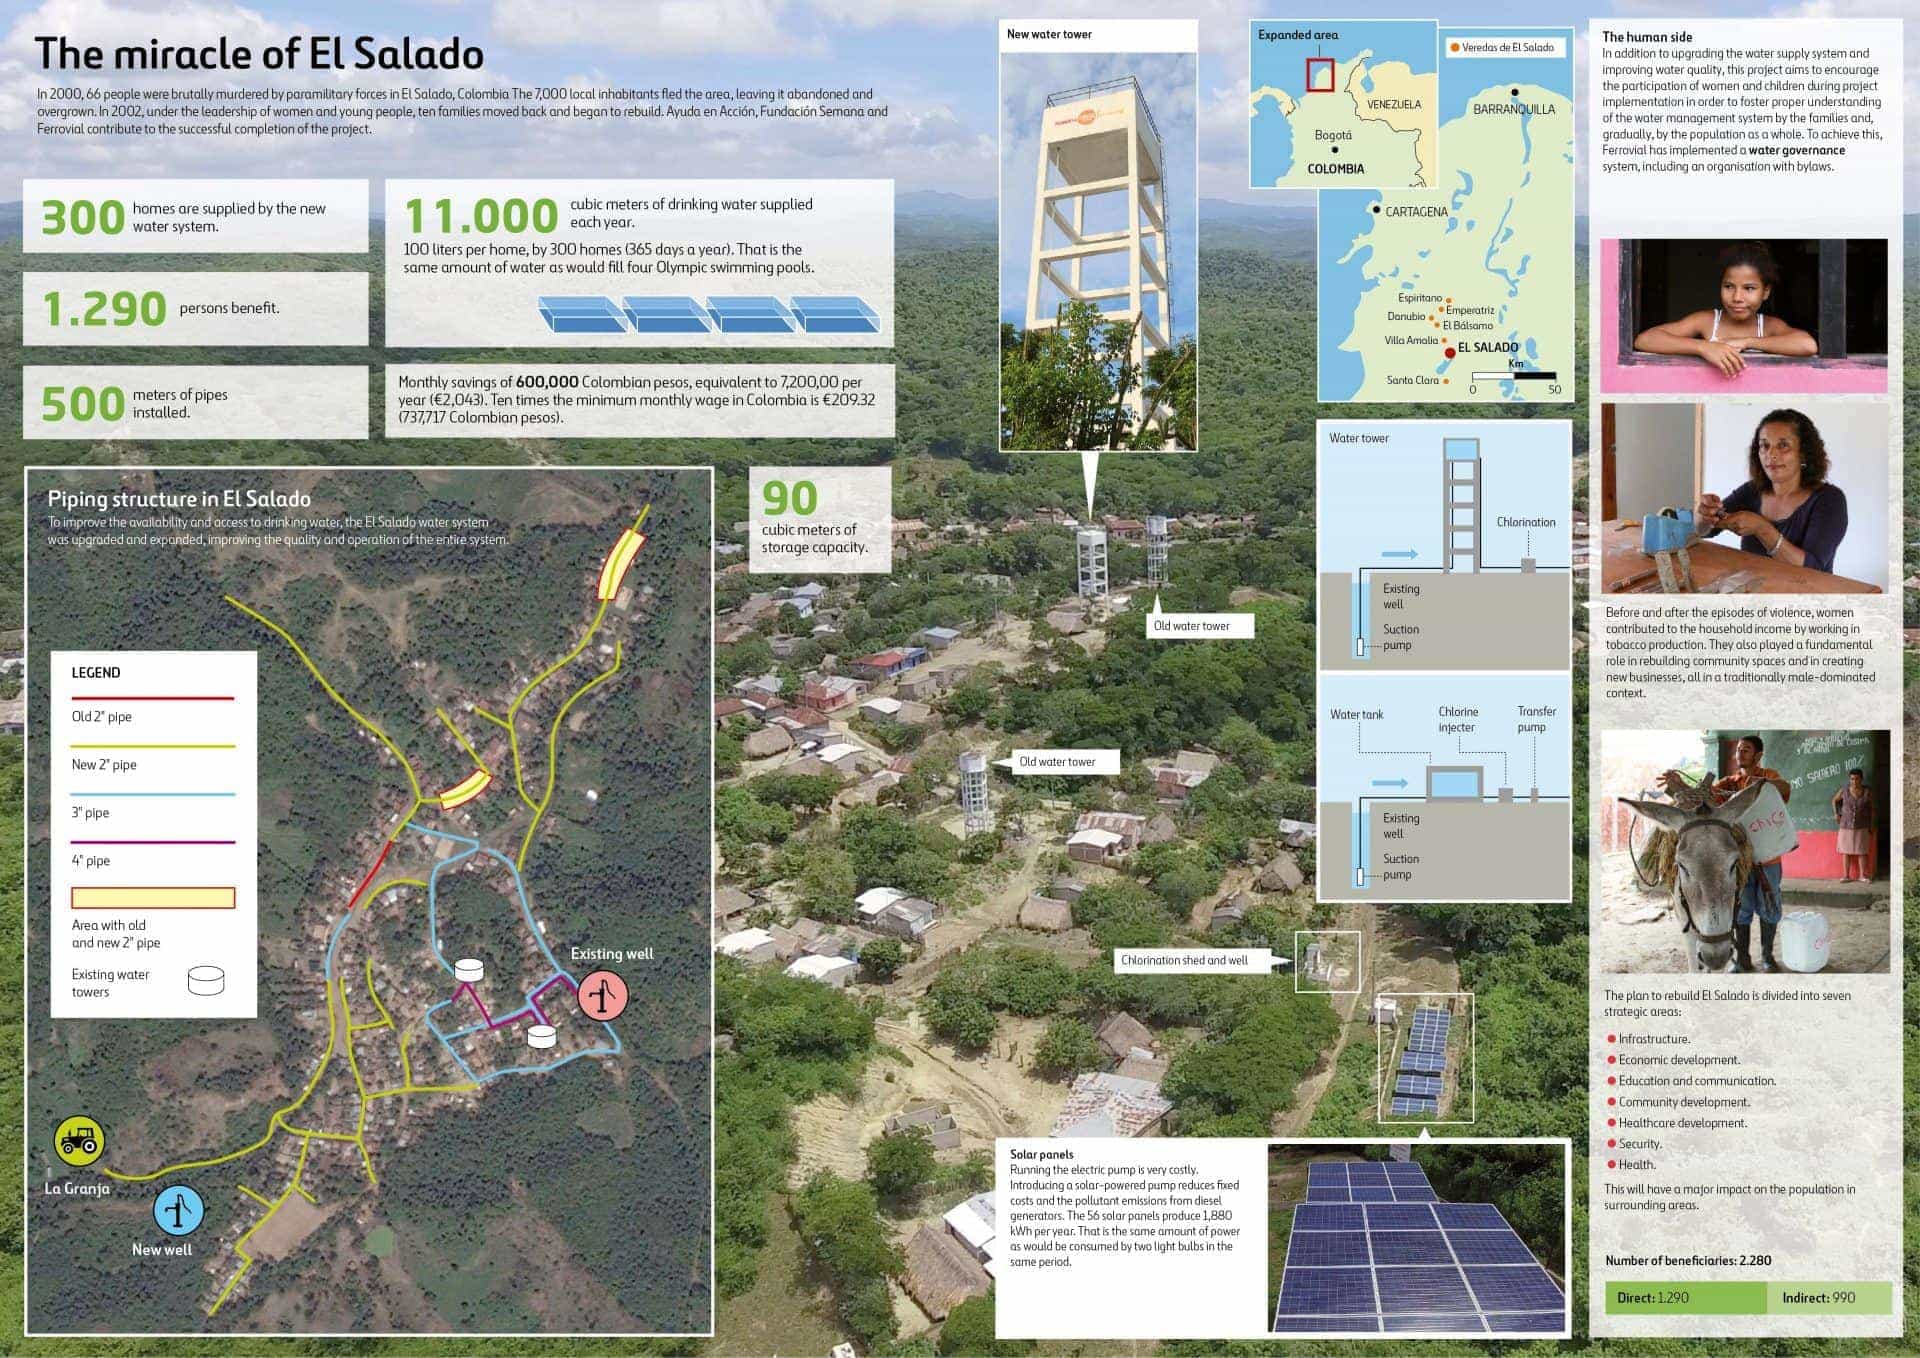 Infographic about the project deliverde by Ayuda en Acción, Fundación Semana and Ferrovial at El Salado, Colombia.